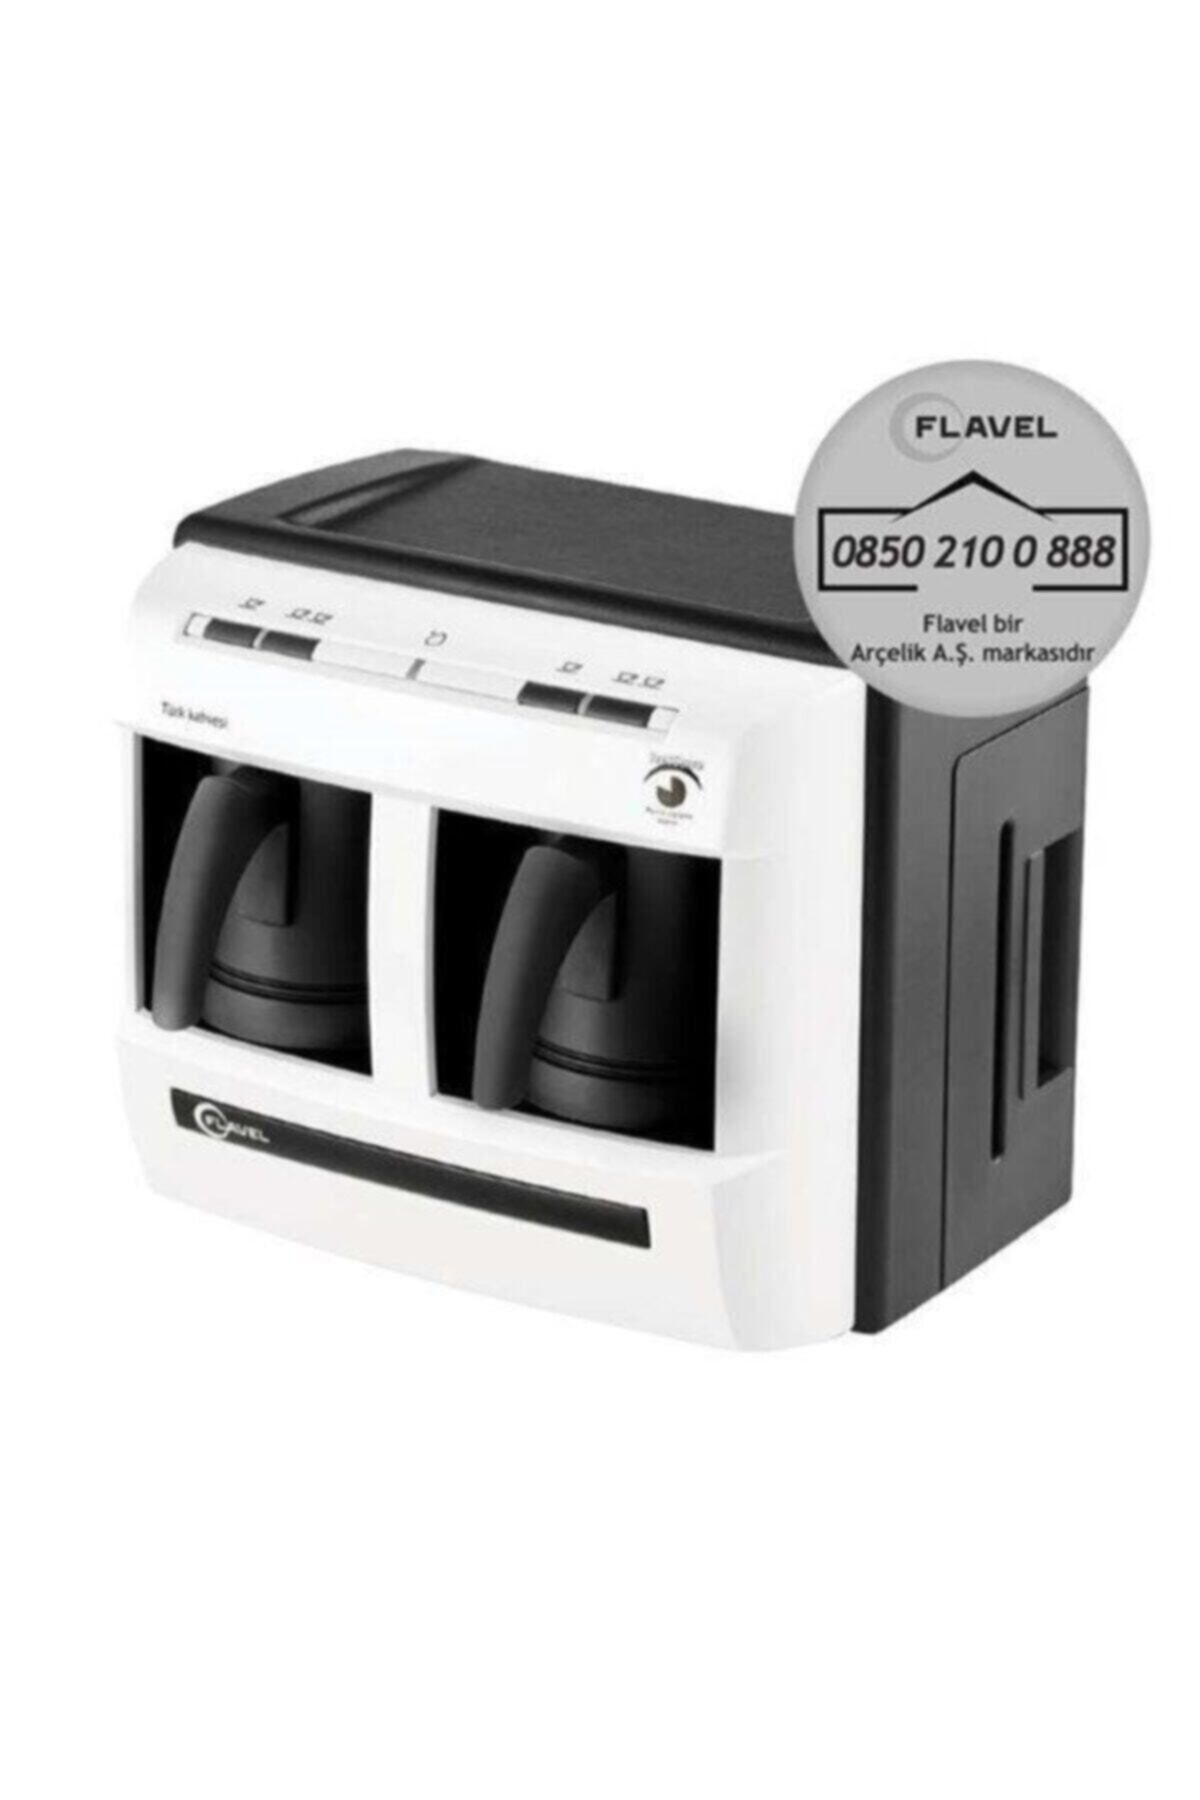 Flavel Flv200 Türk Kahvesi Makinesi Beyaz Cıftlı- Arçelik Servis Garantili